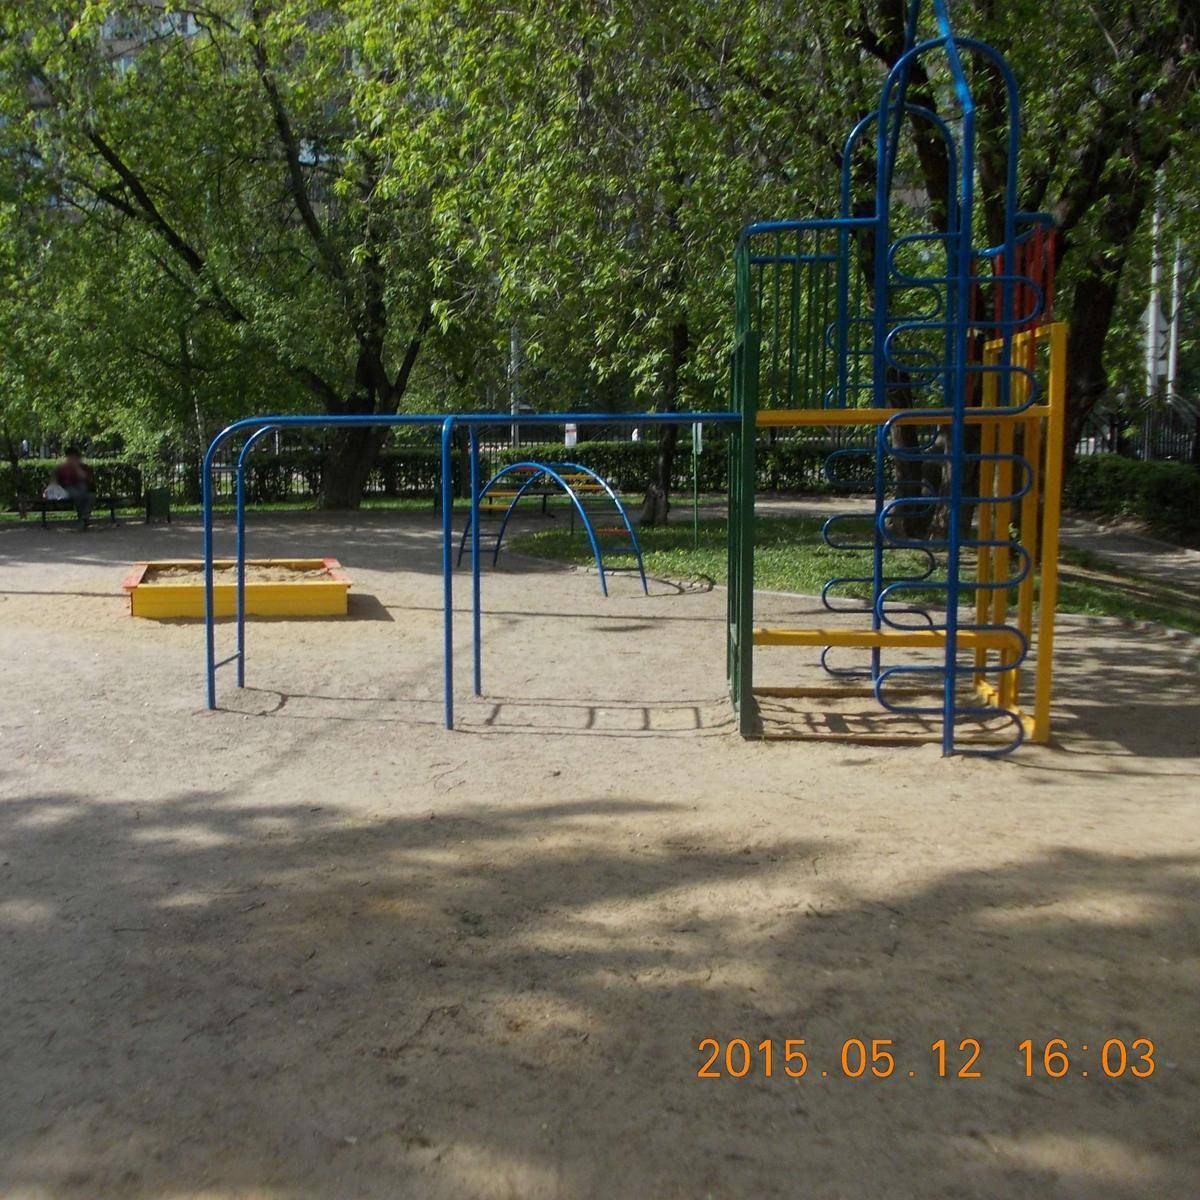 Фото: площадка детская игровая №1, Парковая зона 42 мкр.Марьино